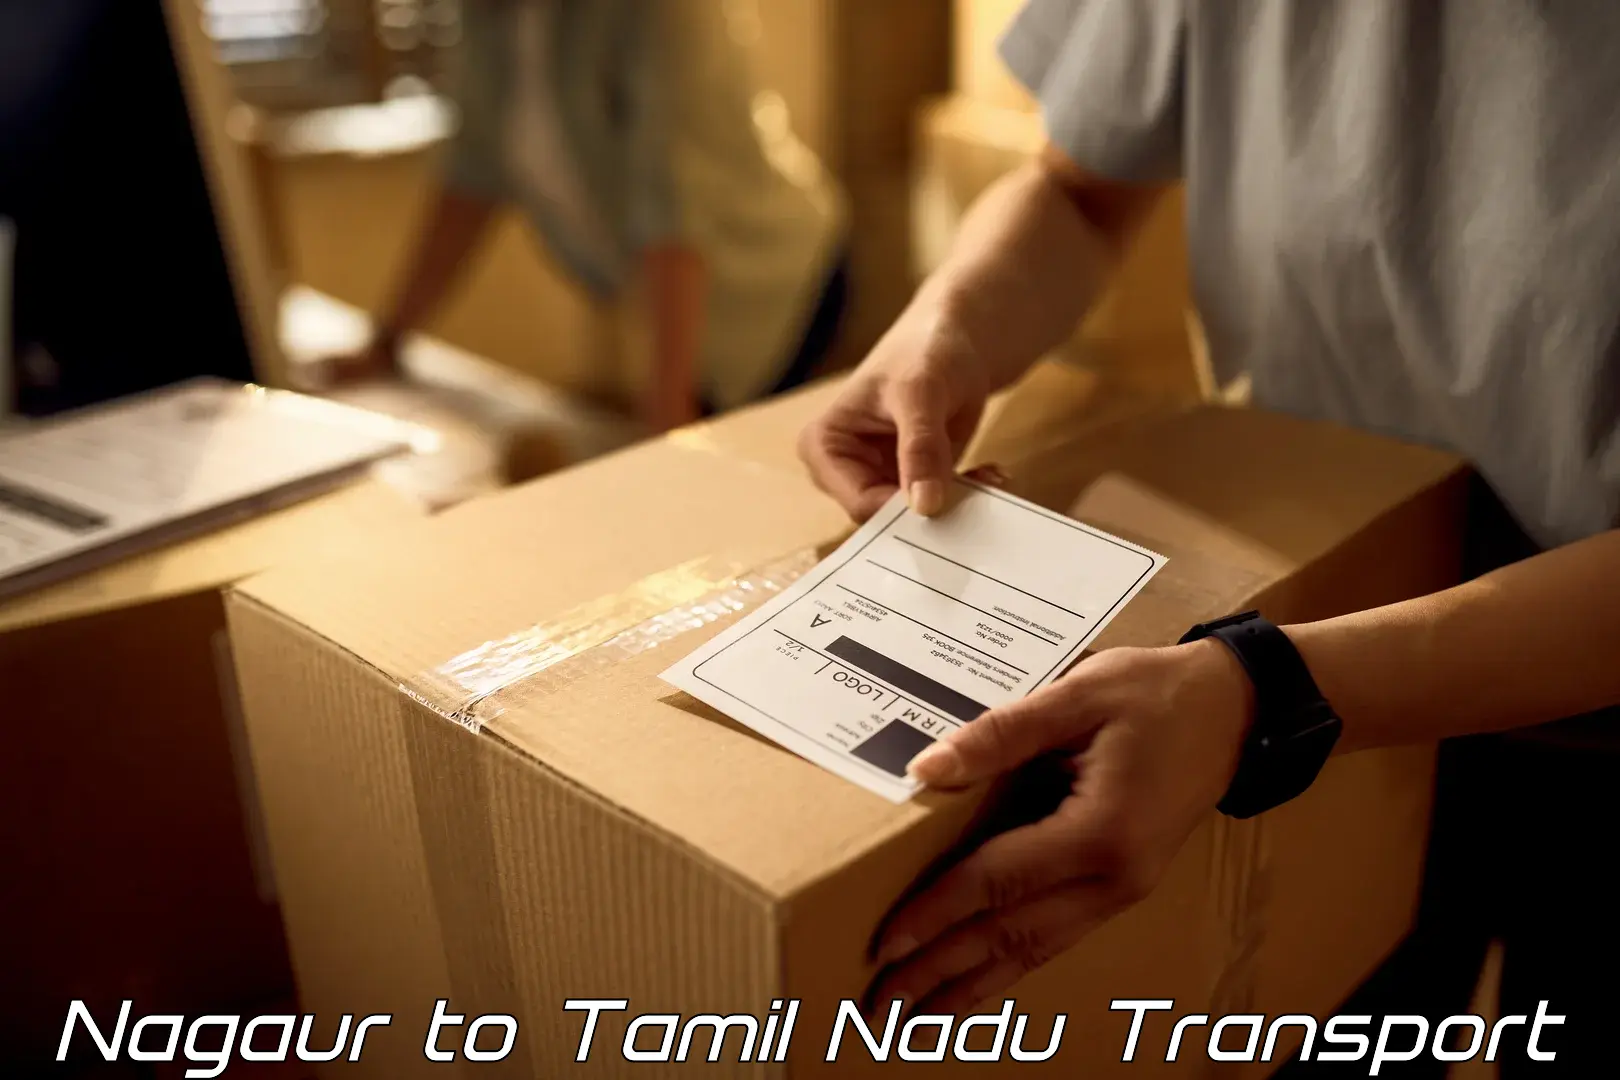 Delivery service Nagaur to Tiruchengode